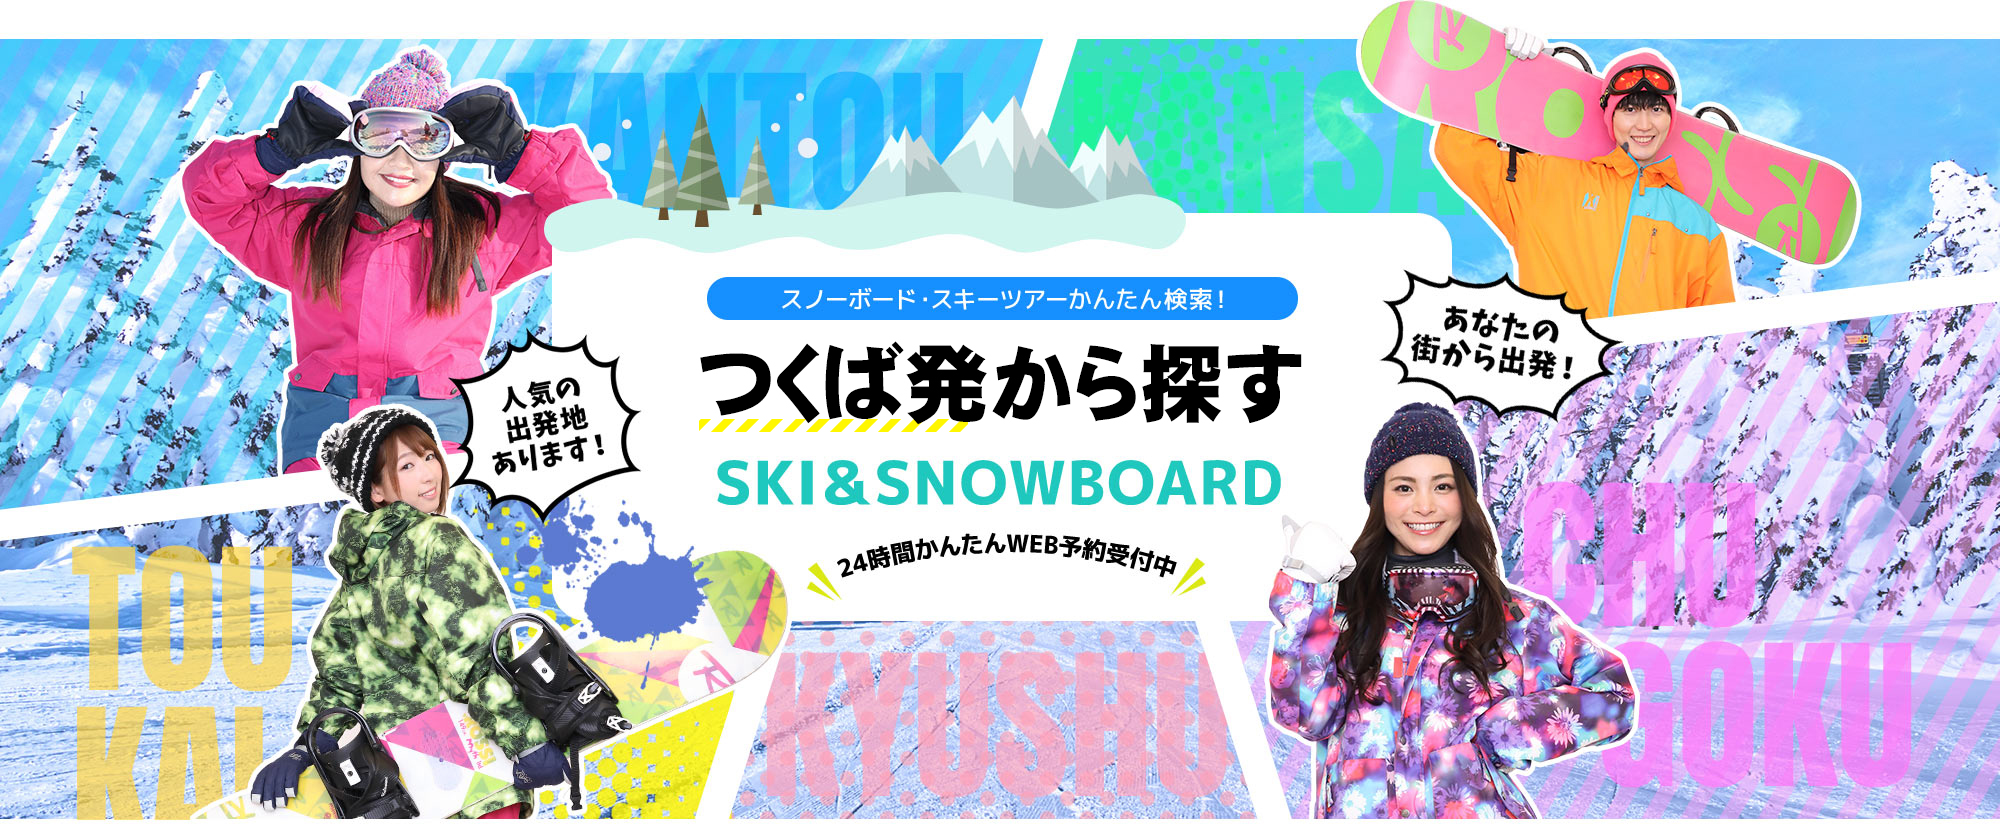 スノーボード・スキーツアーかんたん検索！ つくば発から探す SKI&SNOWBOARD